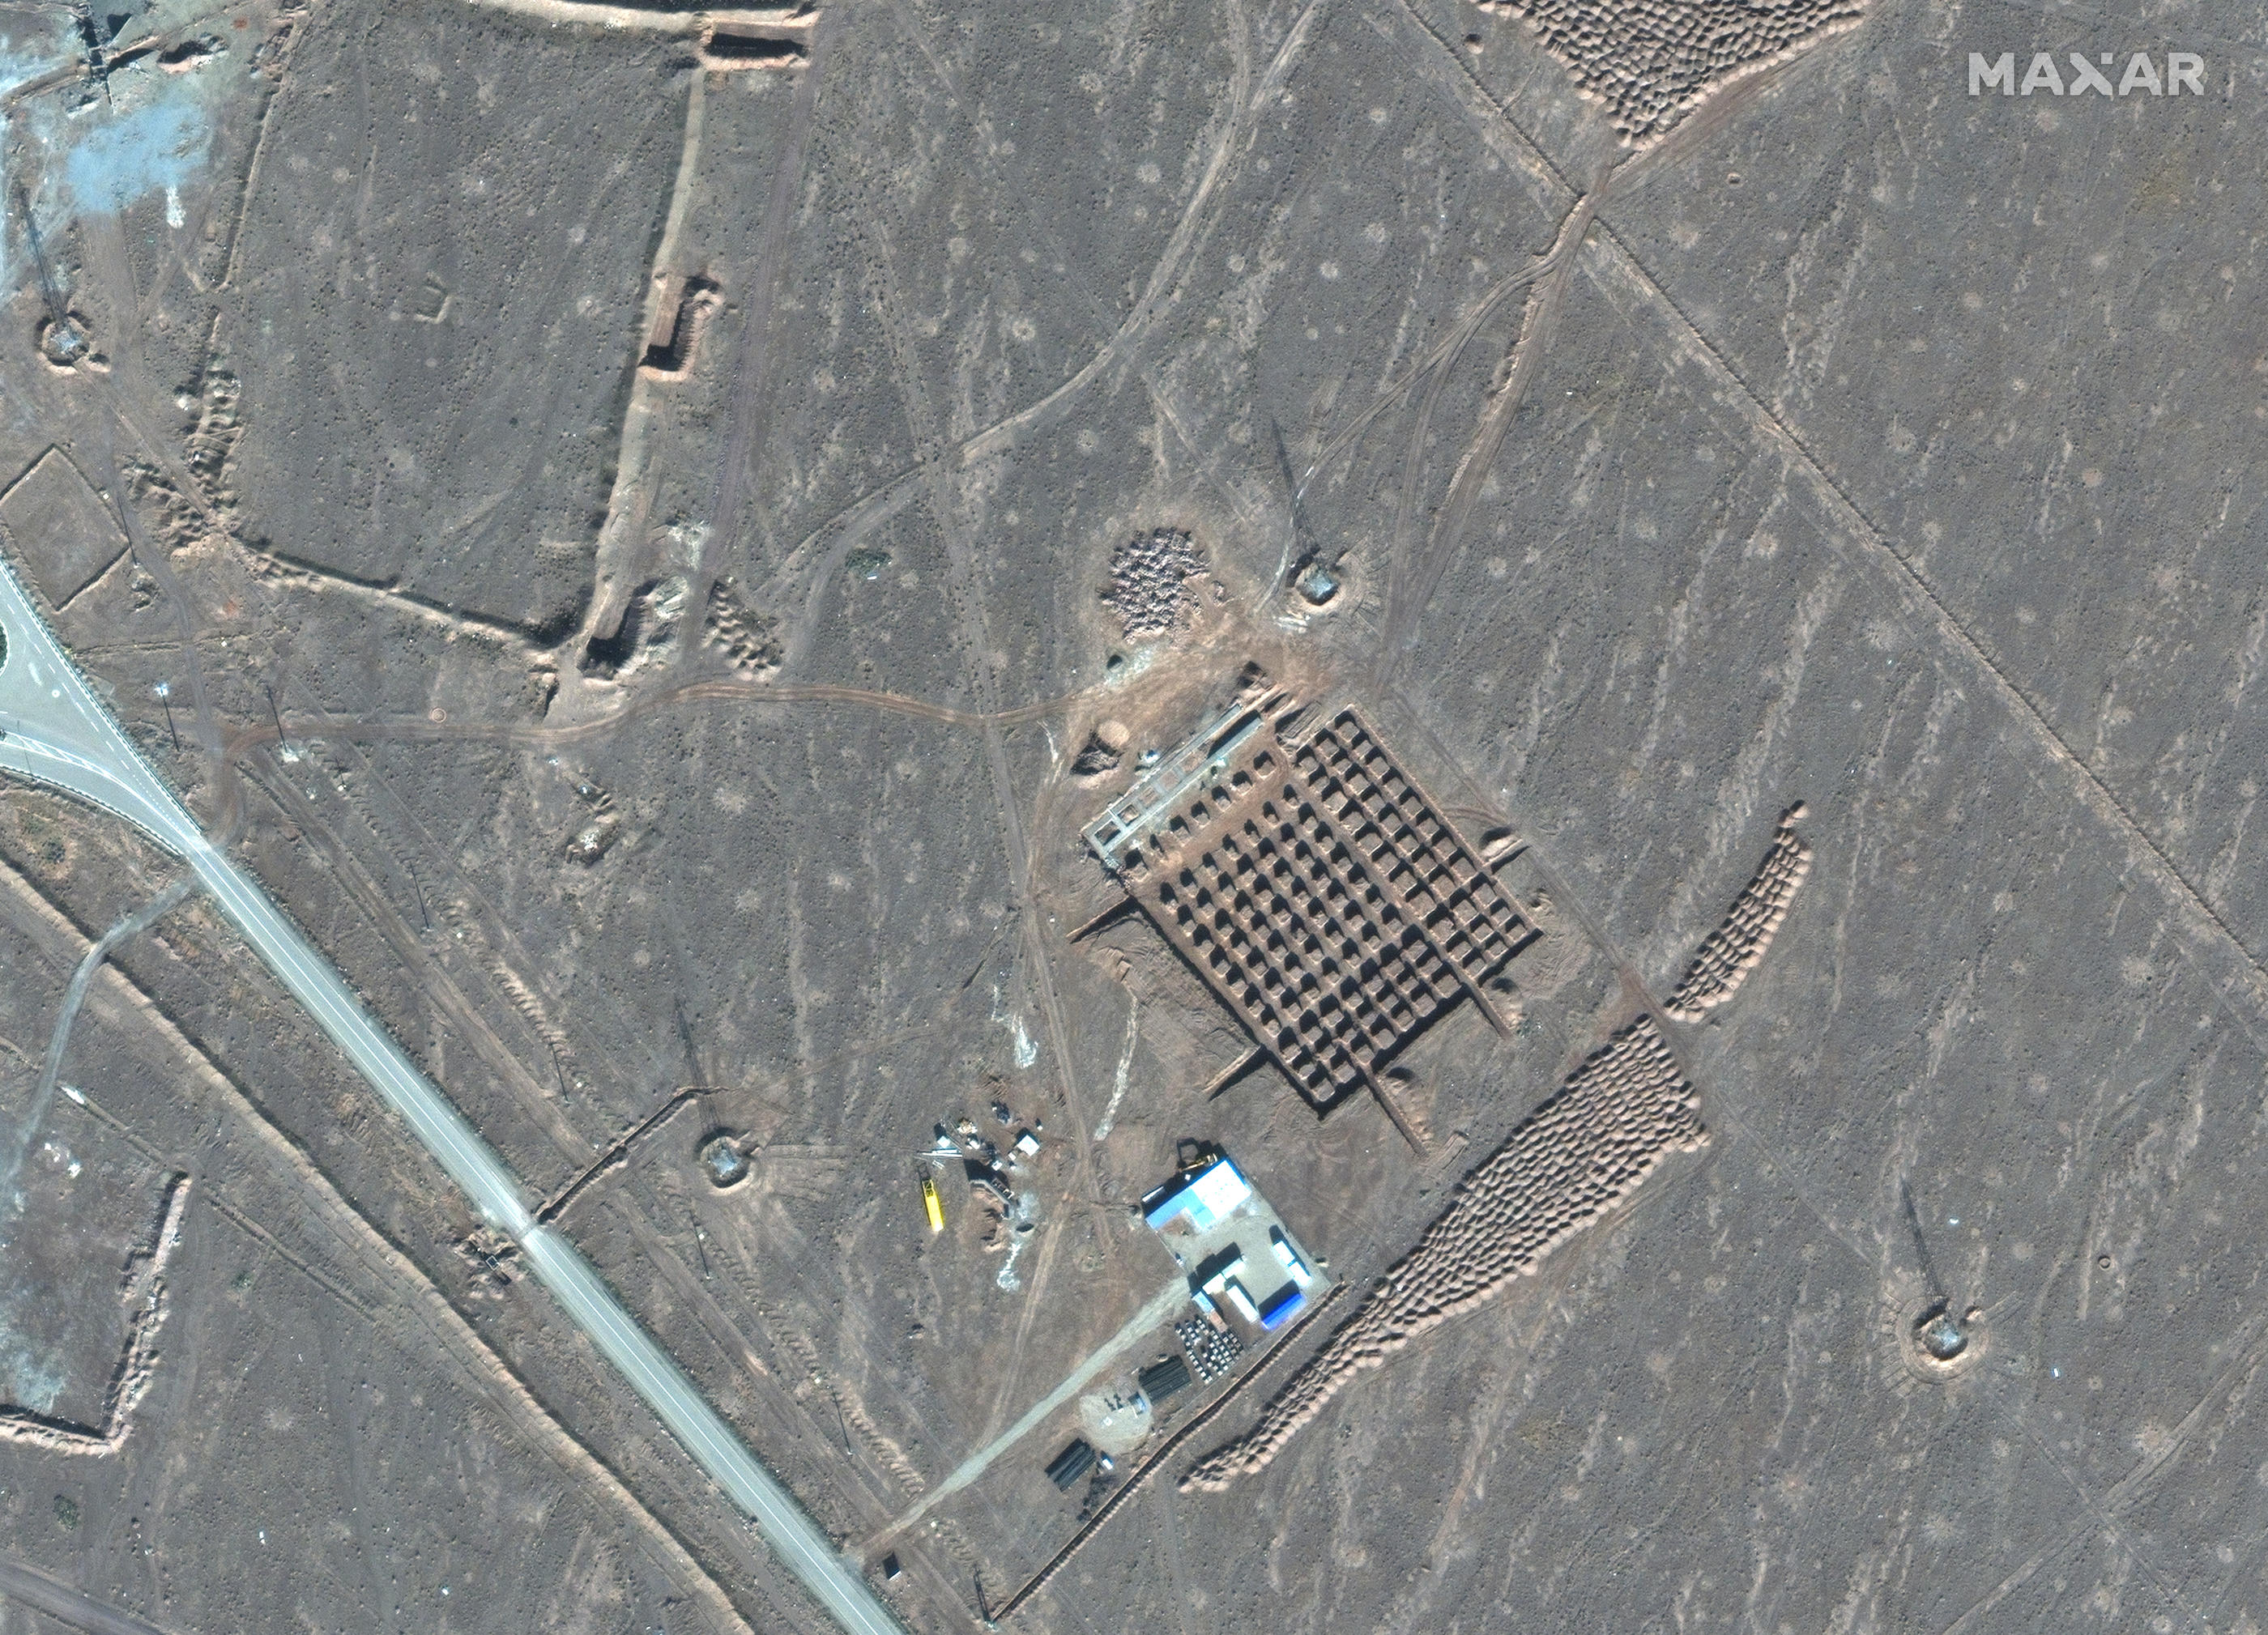 L’Agence internationale de l’énergie atomique a confirmé que les sites nucléaires iraniens n’avaient subi « aucun dégât » après les explosions entendues vendredi dans le centre du pays. (Illustration) AFP / Satellite image 2021 Maxar Technologies